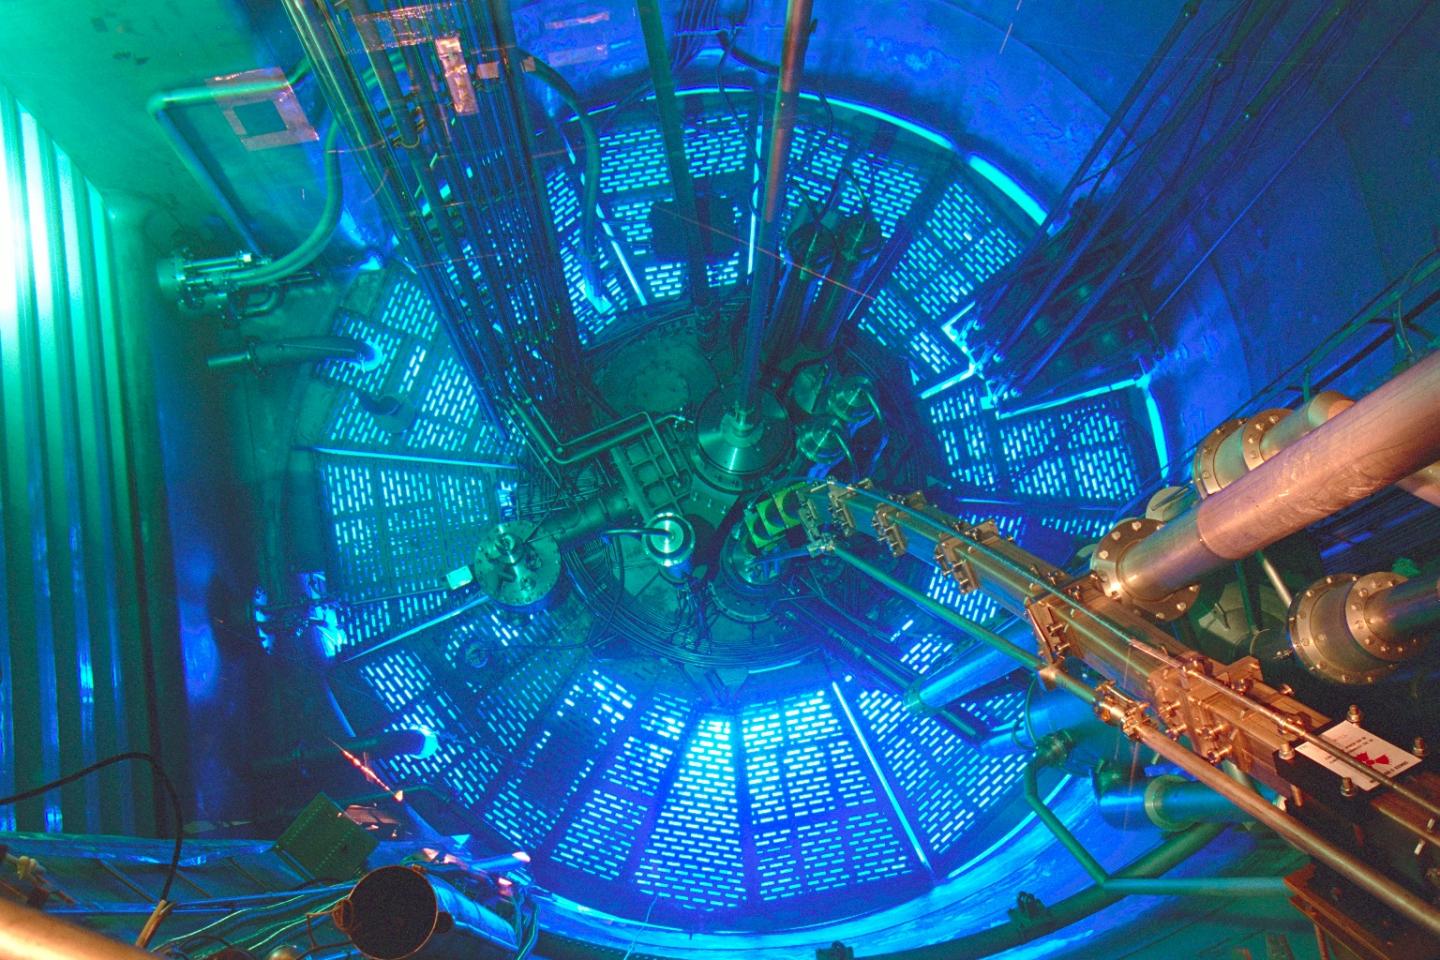 The Reactor at the Institut Laue-Langevin